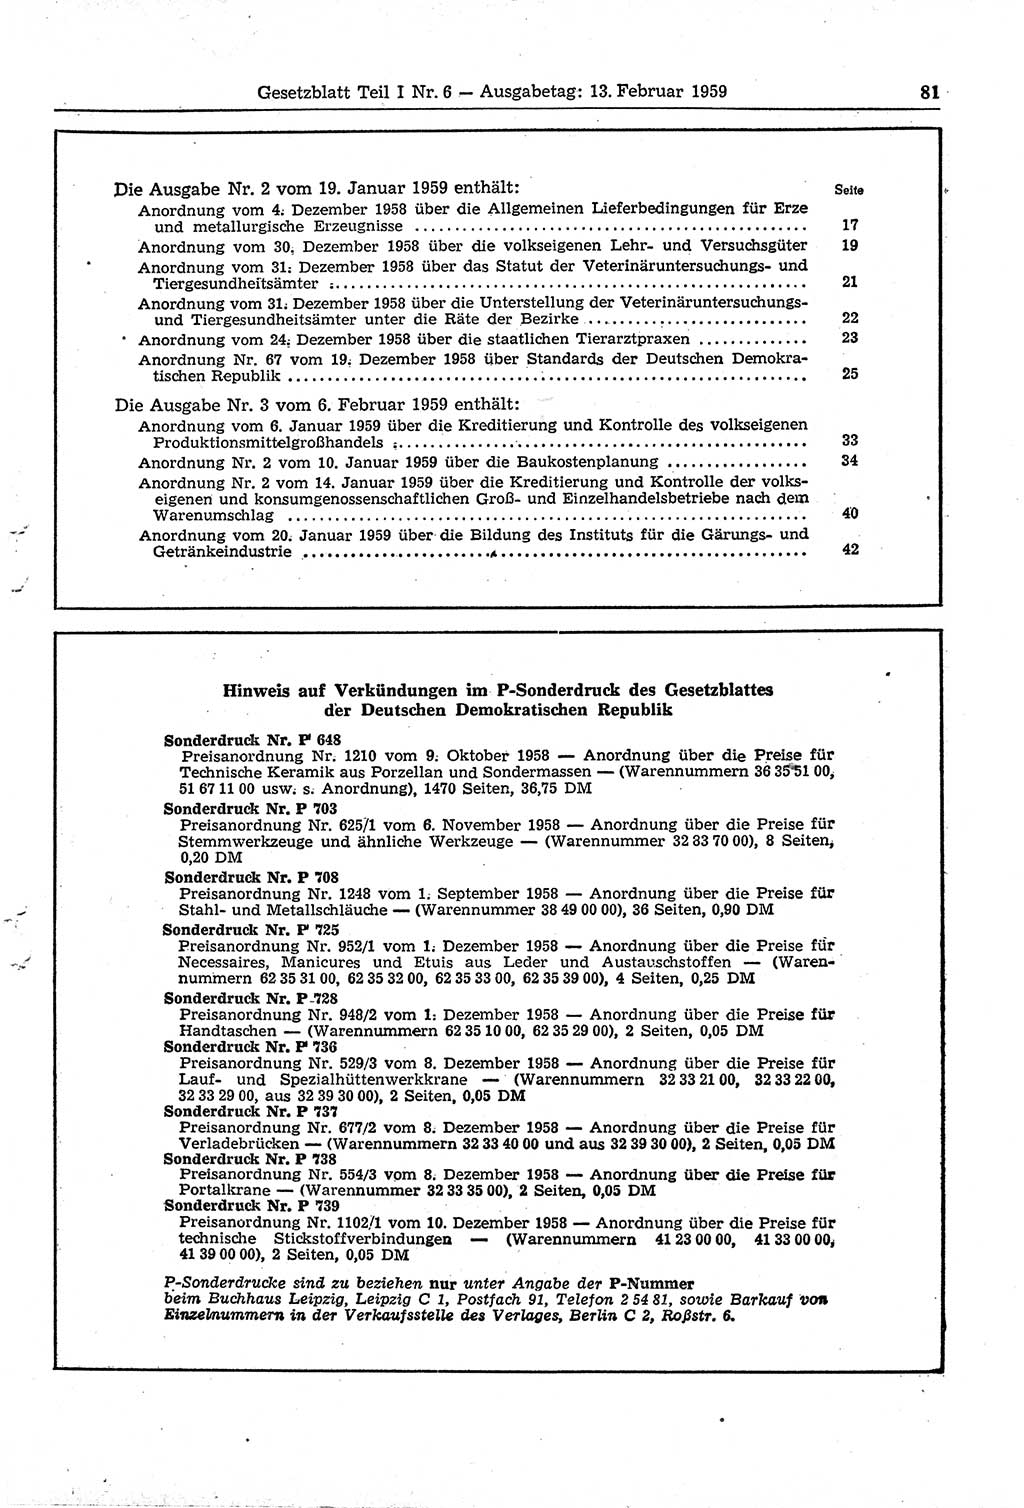 Gesetzblatt (GBl.) der Deutschen Demokratischen Republik (DDR) Teil Ⅰ 1959, Seite 81 (GBl. DDR Ⅰ 1959, S. 81)